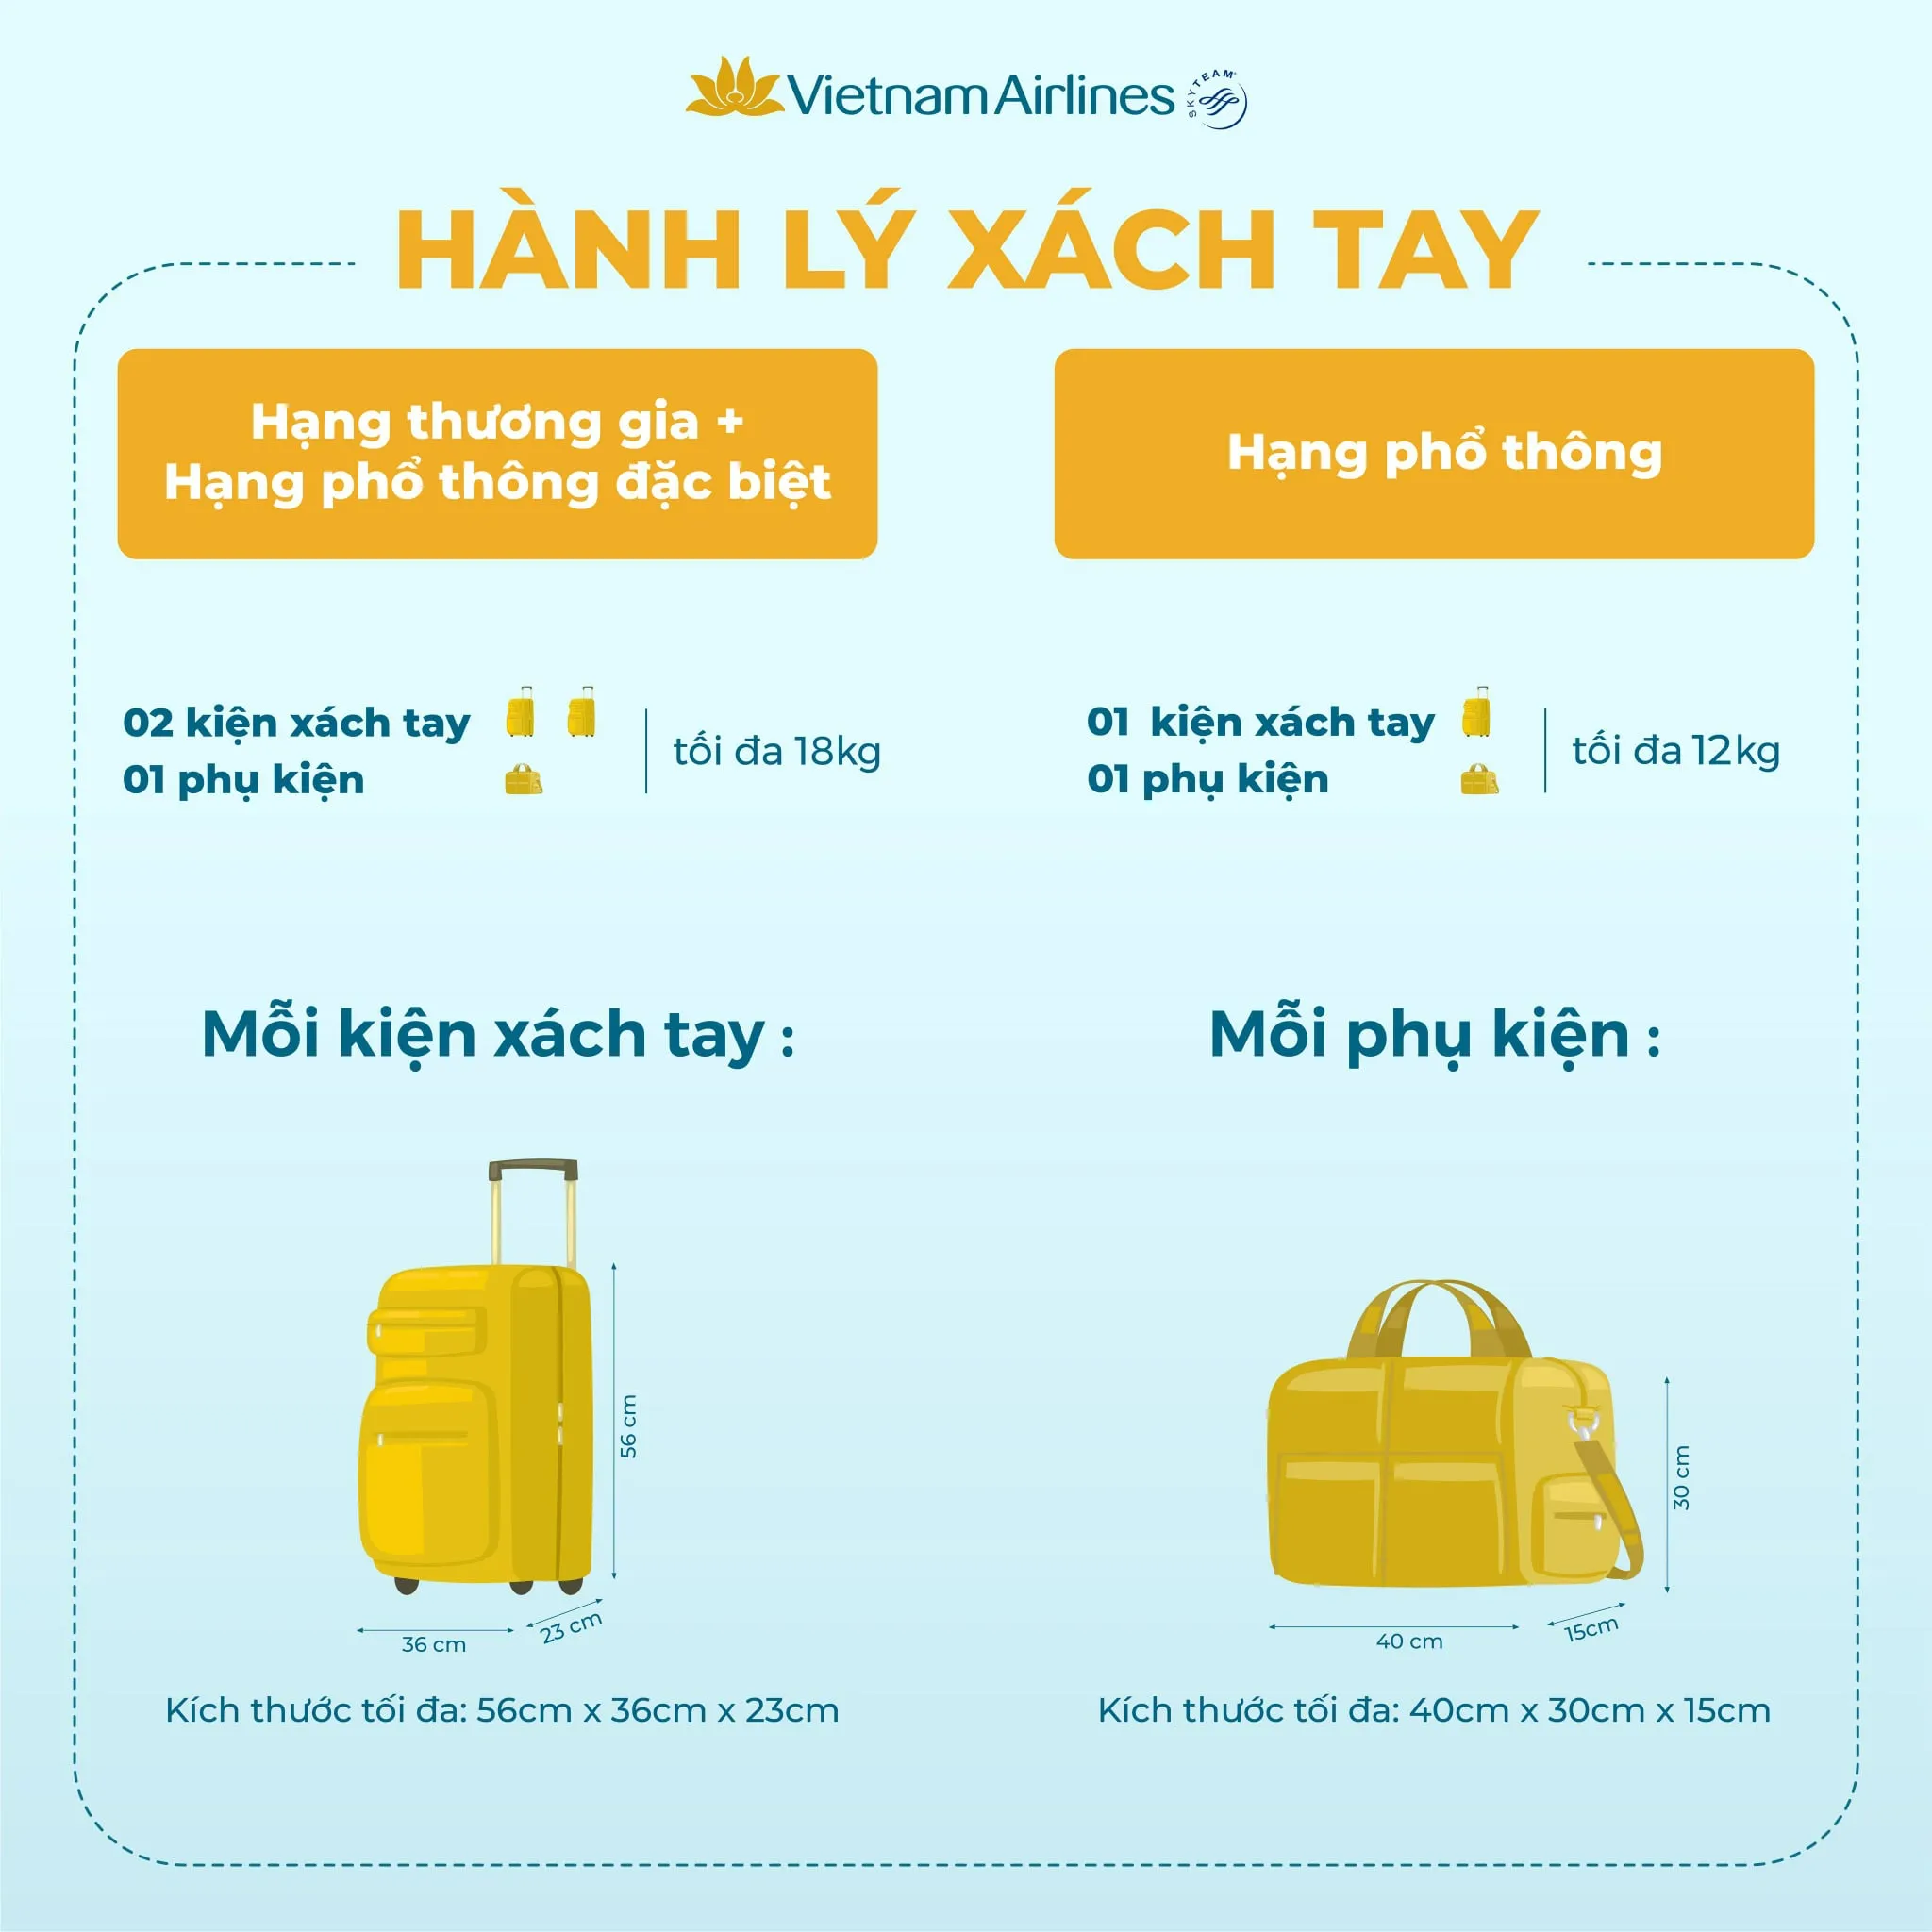 Quy định hành lý xách tay của hãng Vietnam Airlines